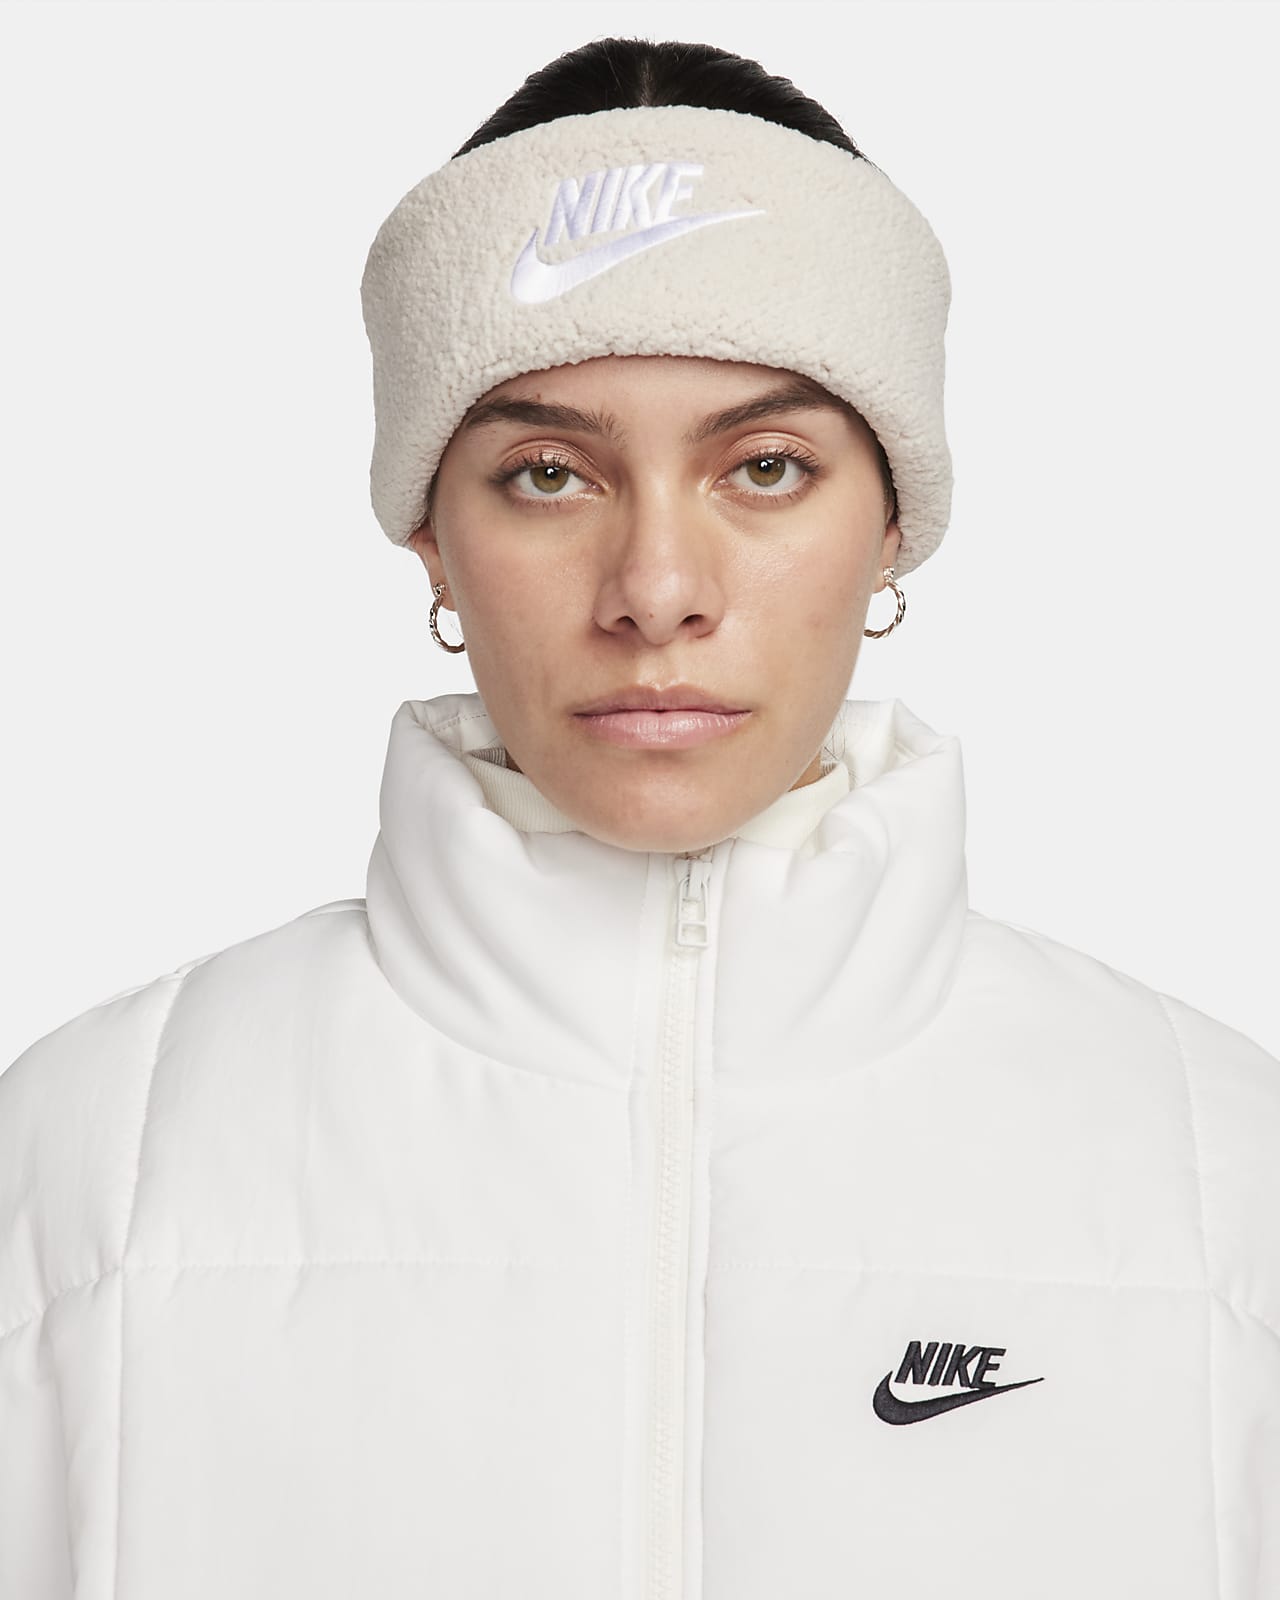 Nike Women's Fleece Headband.